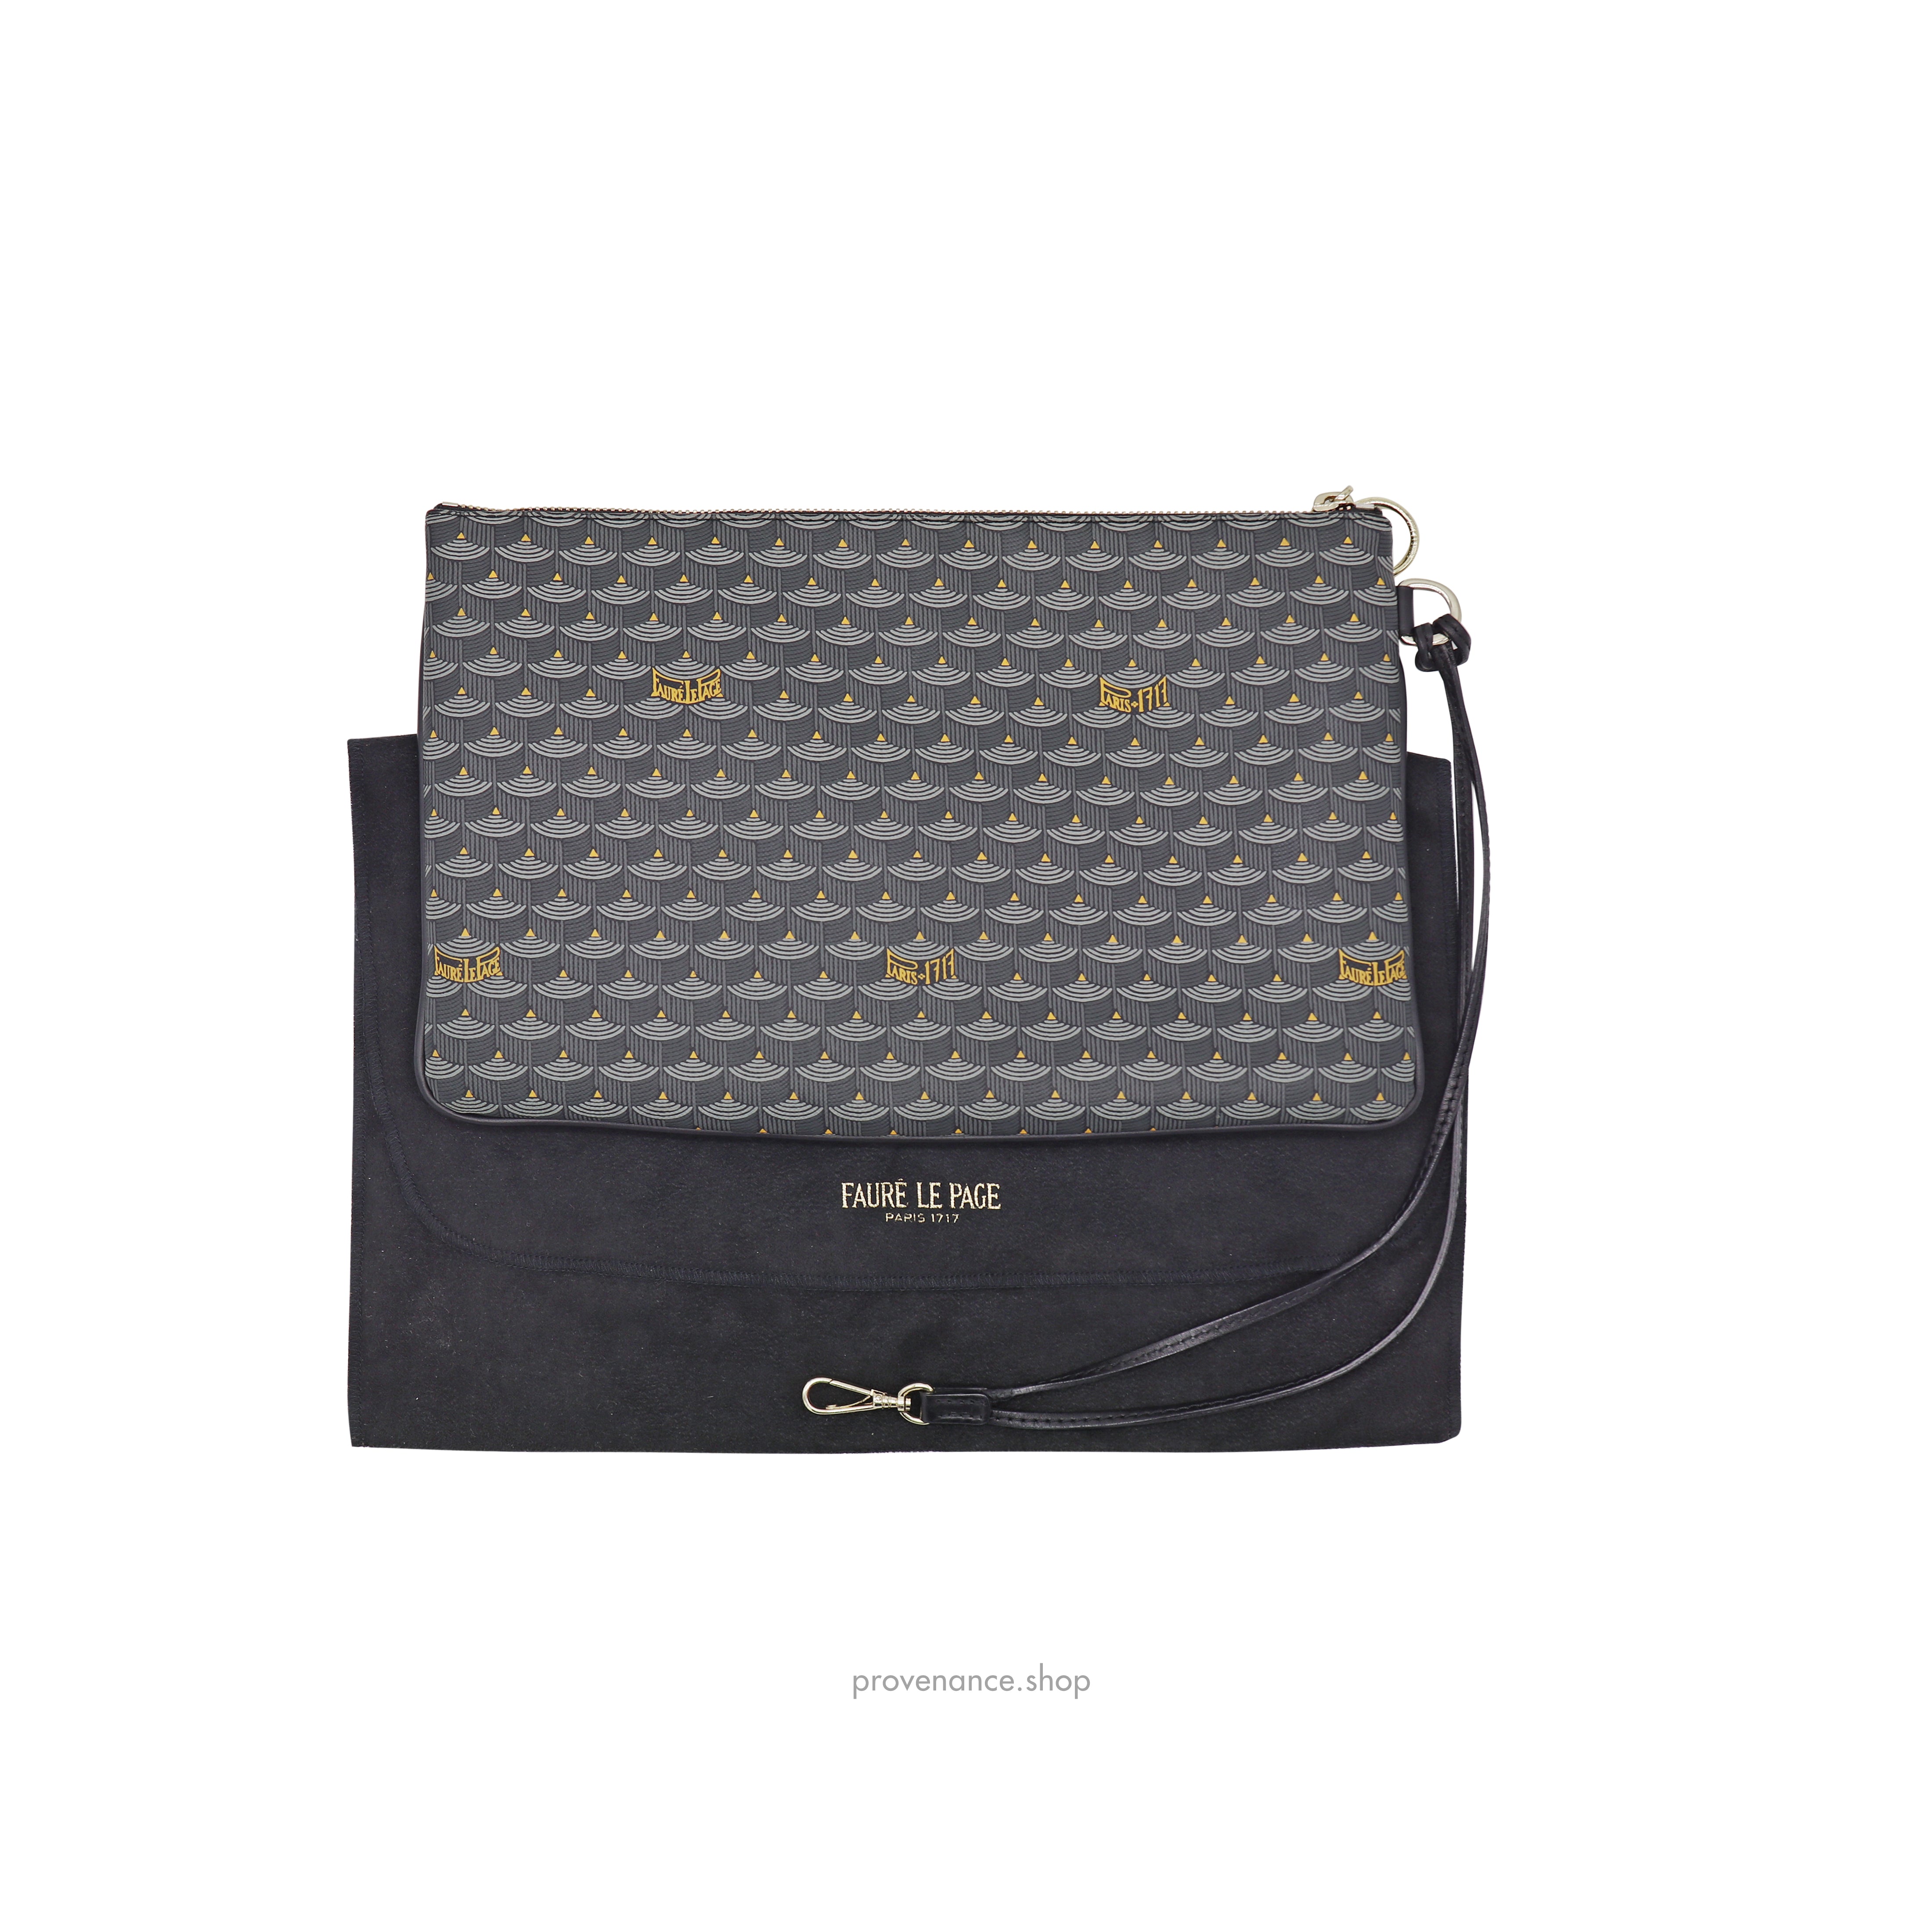 Fauré Le Page - Calibre Soft 20 Shoulder Bag - Steel Grey Scale Canvas & Black Leather